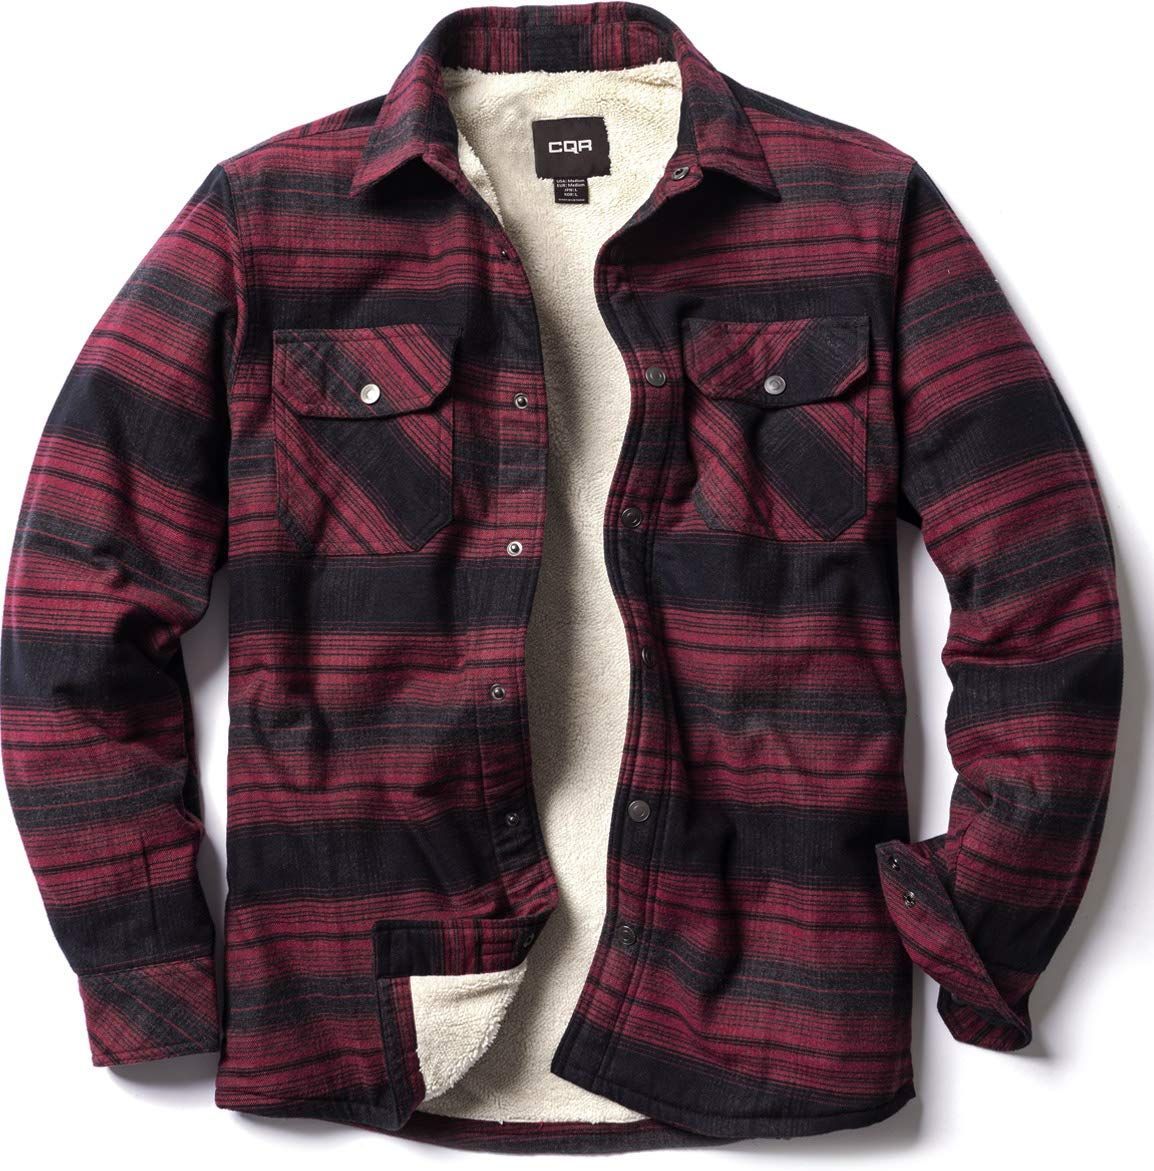 CQR シャツジャケット メンズ 厚手 耐久性・保温 ネルシャツ